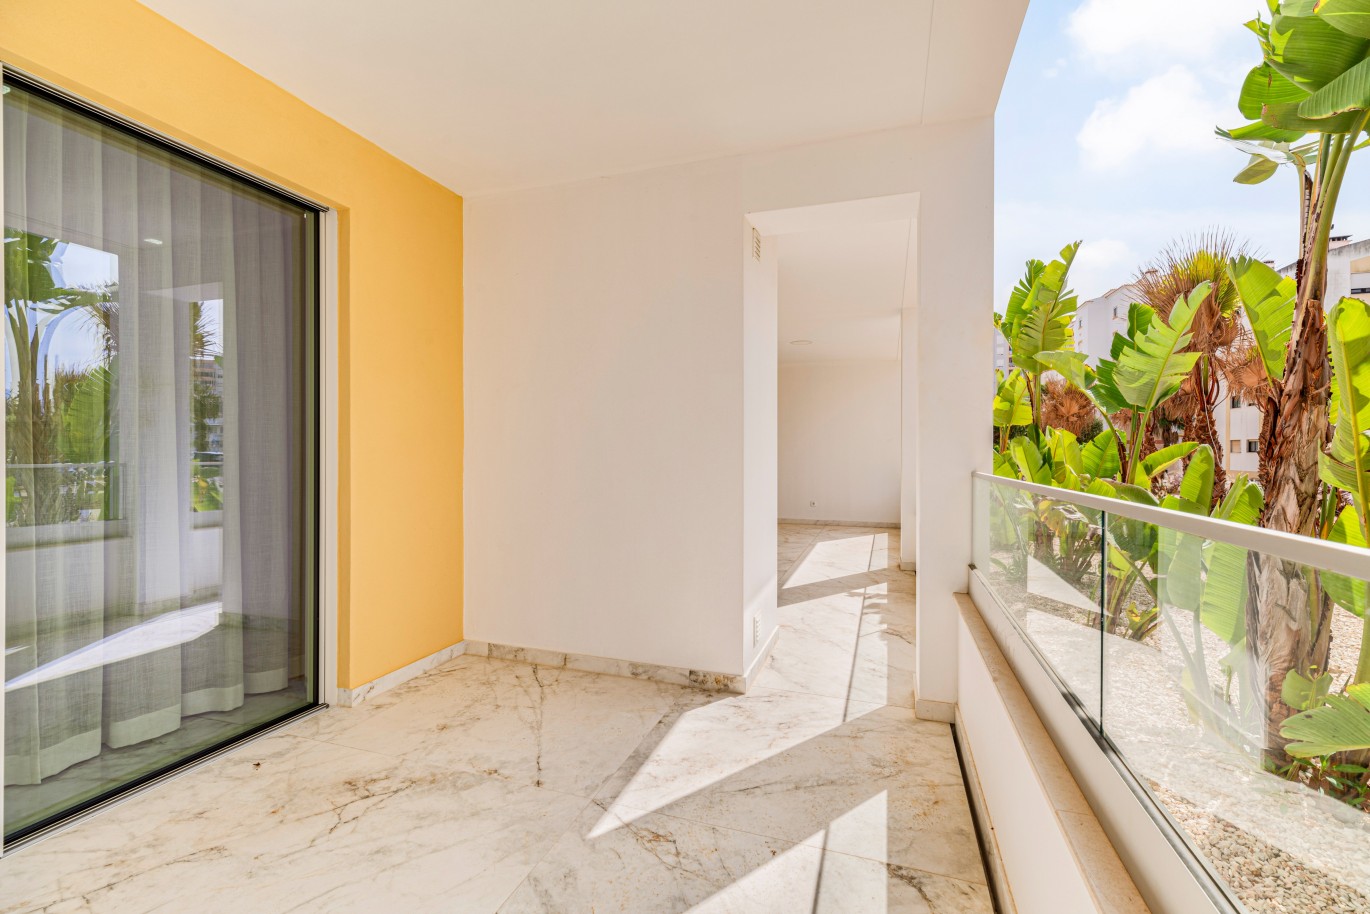 Apartamento, com terraço, para venda, em Lagos, Algarve_238137